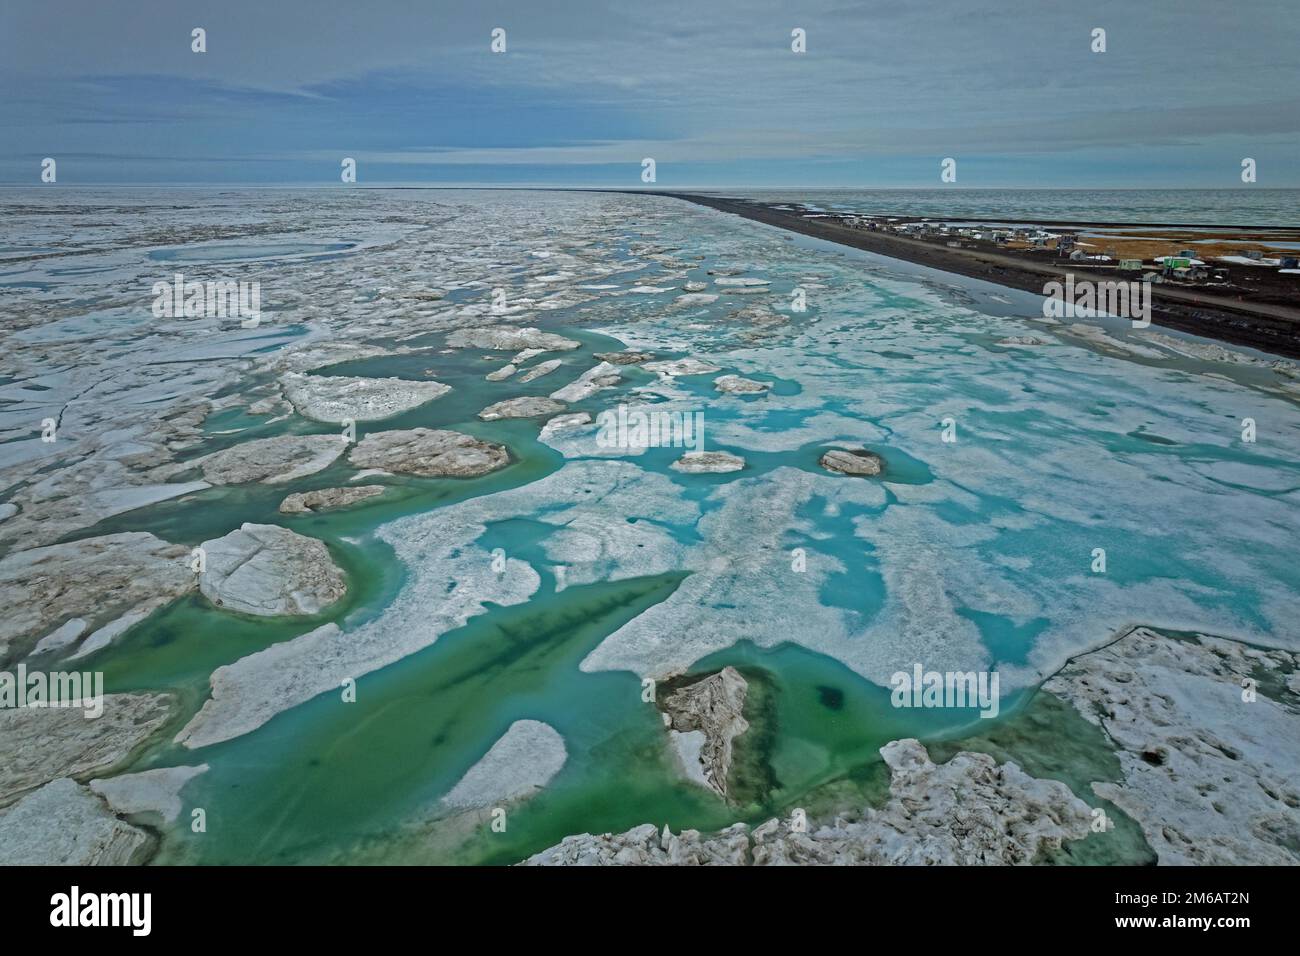 Images de drones, côte glacée, déglaçage, brouille, brouette entre le détroit et le point, océan Arctique, mer de Chukchi, Arctique, Alaska du Nord, ÉTATS-UNIS Banque D'Images